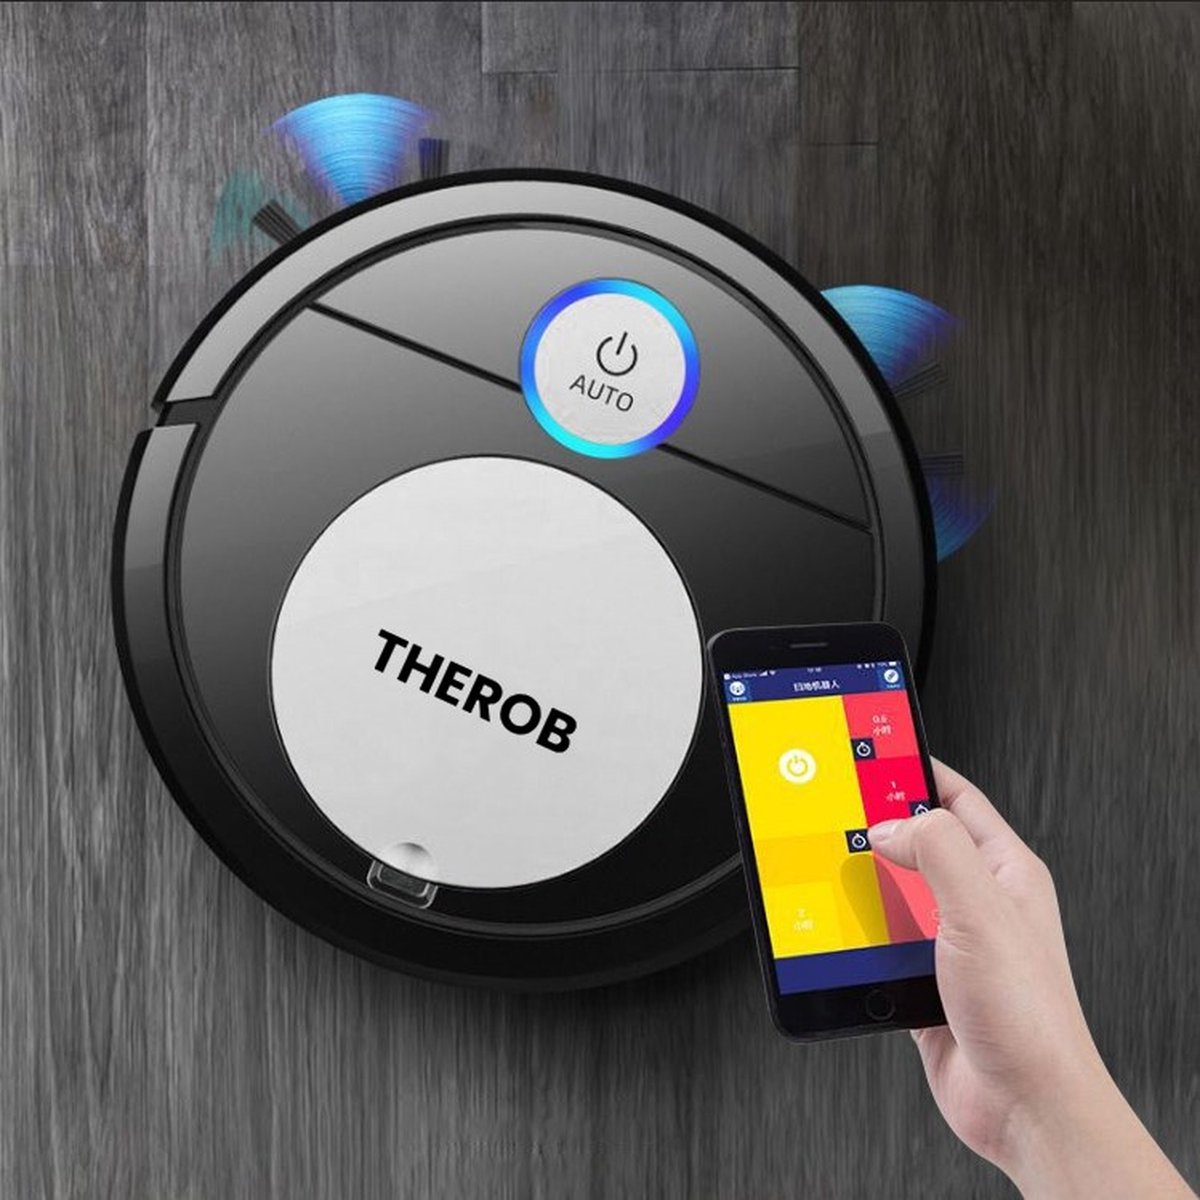 THEROB - Smart robot stofzuiger met app. (zwart/zilver) van € 139,95 nu TIJDELIJK voor € 69.89